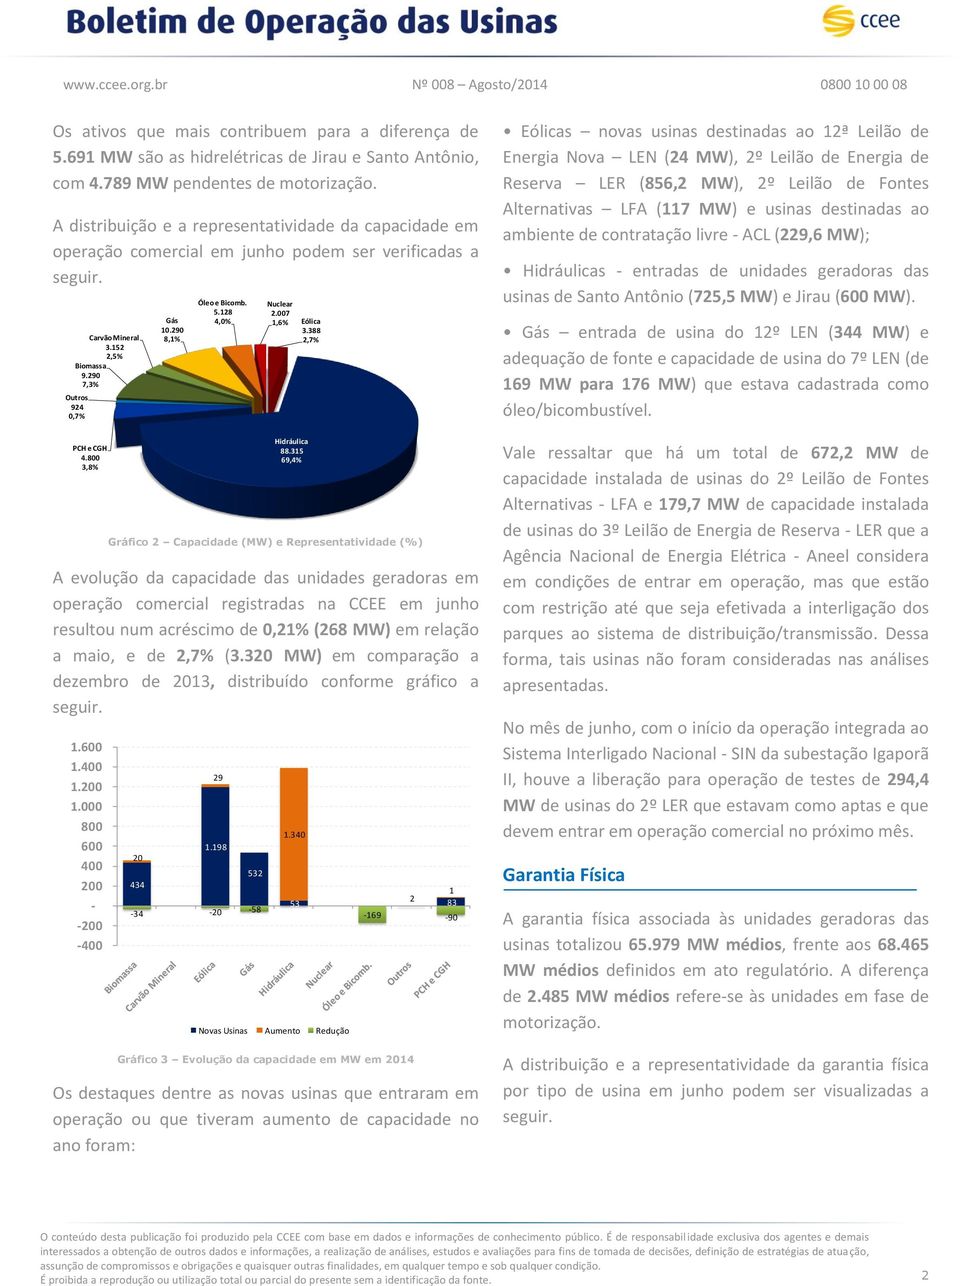 3,8% Gráfico 2 Capacidade (MW) e Representatividade (%) A evolução da capacidade das unidades geradoras em operação comercial registradas na CCEE em junho resultou num acréscimo de 0,21% (268 MW) em